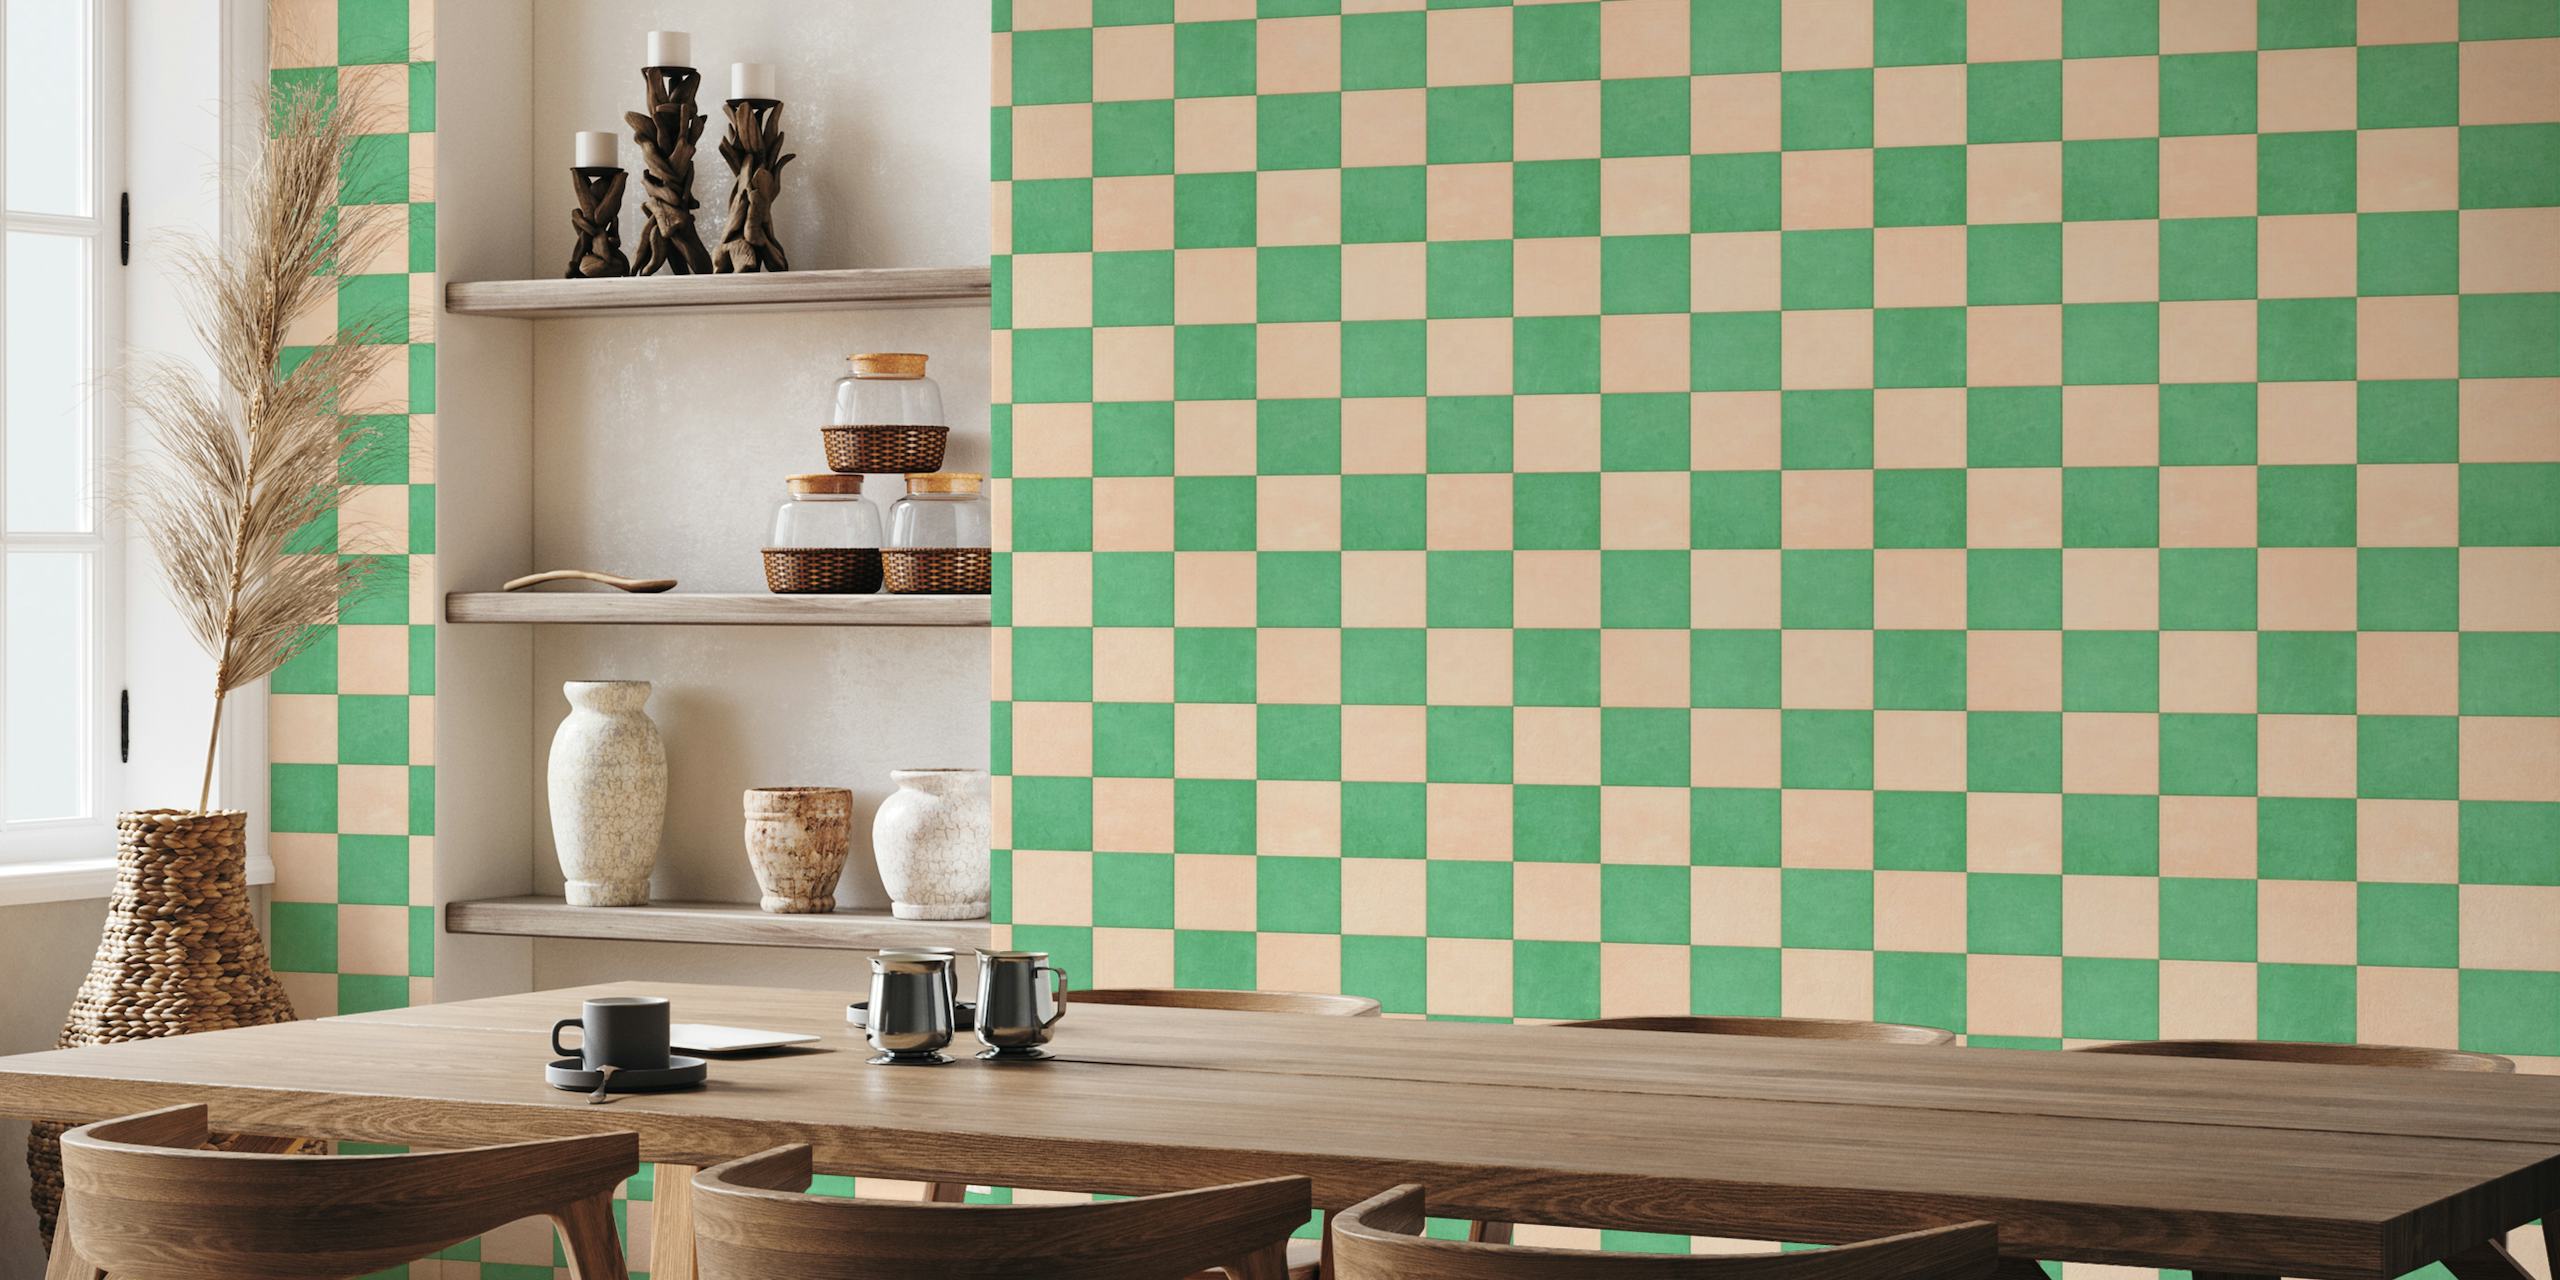 TILES 002 A - Checkerboard wallpaper